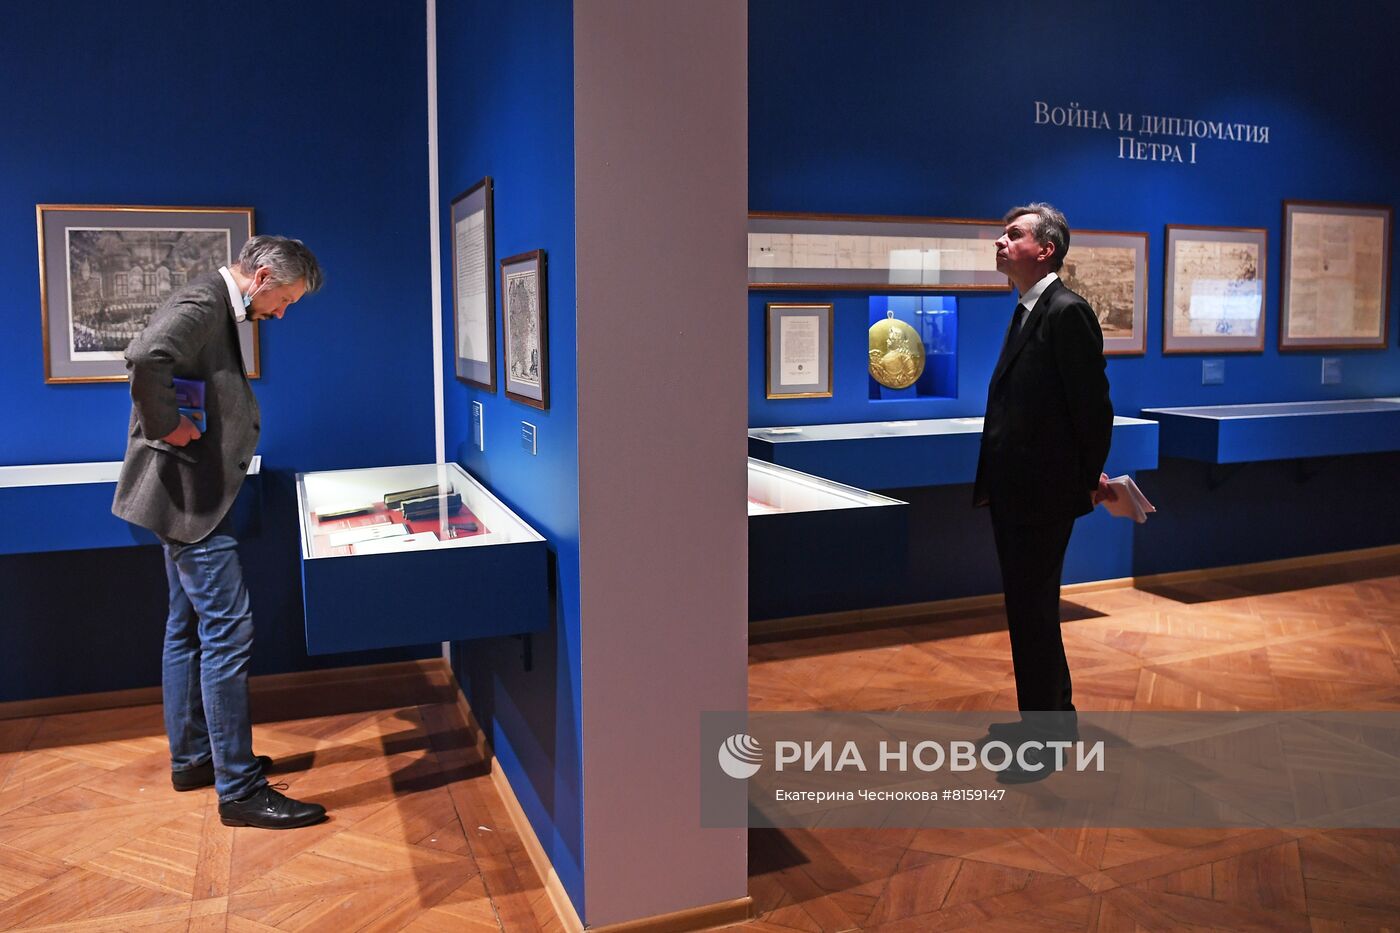 Историко-документальная выставка "Пётр I и его эпоха"